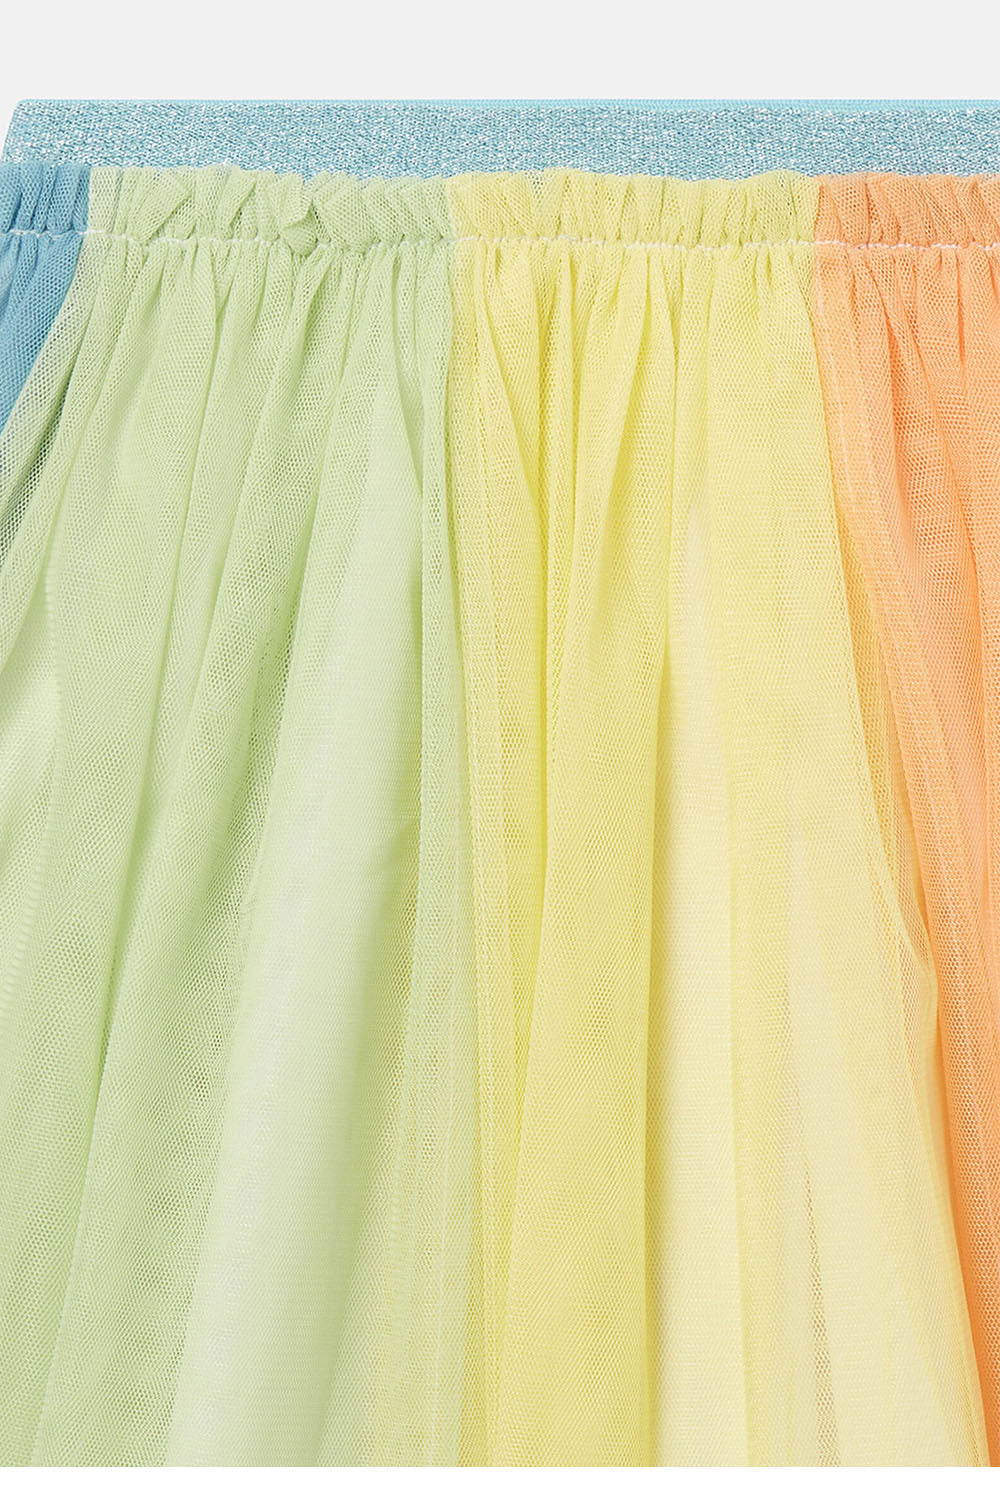 Rainbow Tulle Tutu Skirt - Maison7